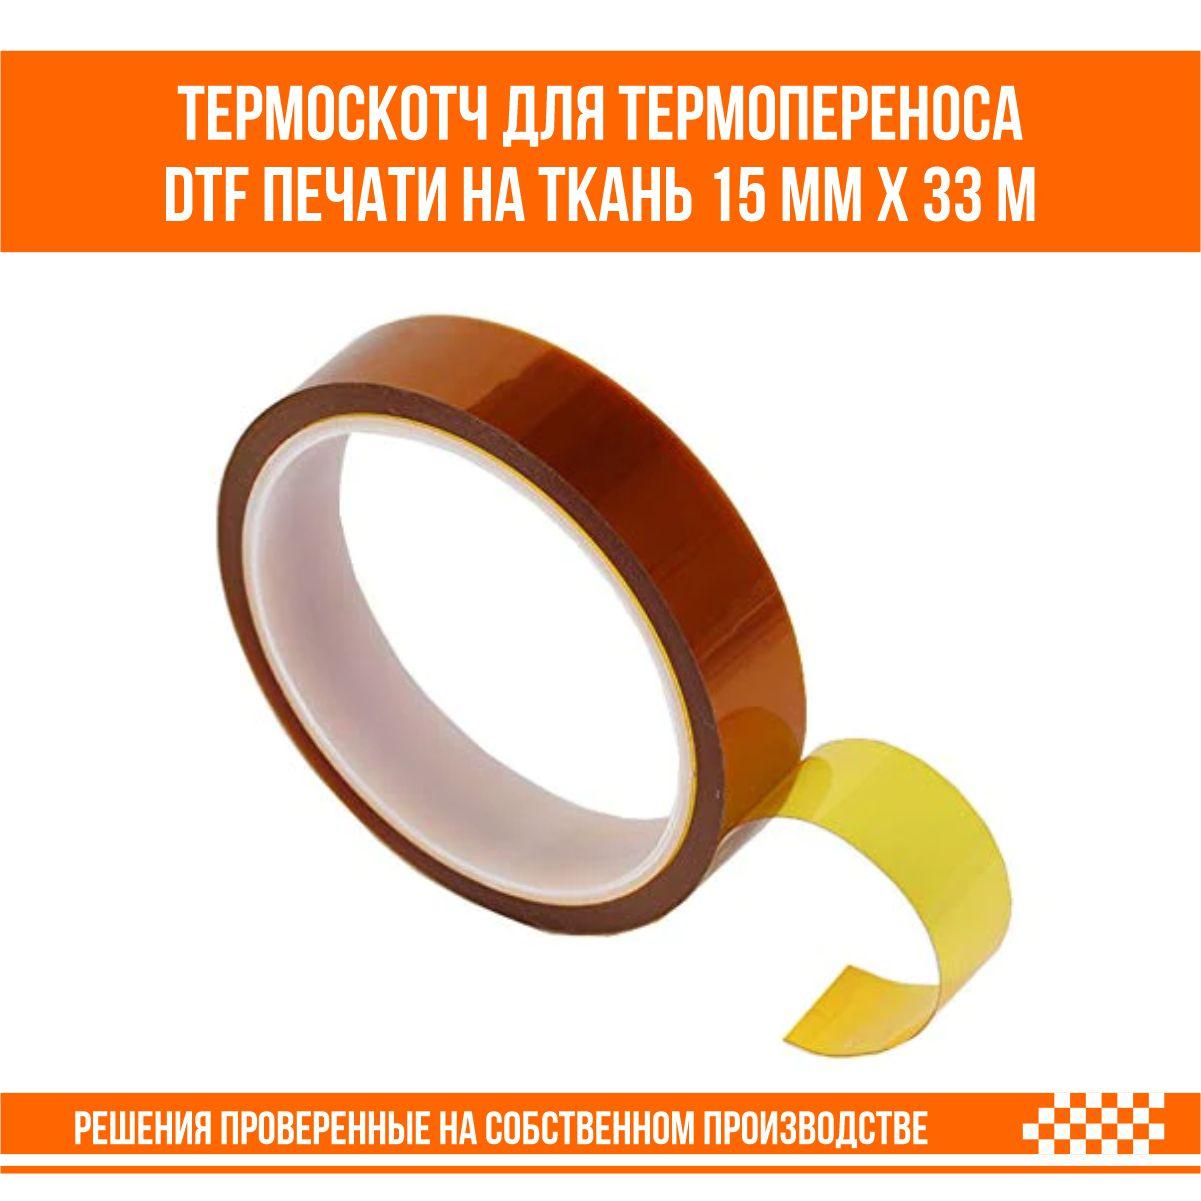 Термоскотч для термопереноса DTF печати и сублимационной печати на ткань 15 мм х 33 м, фото 1